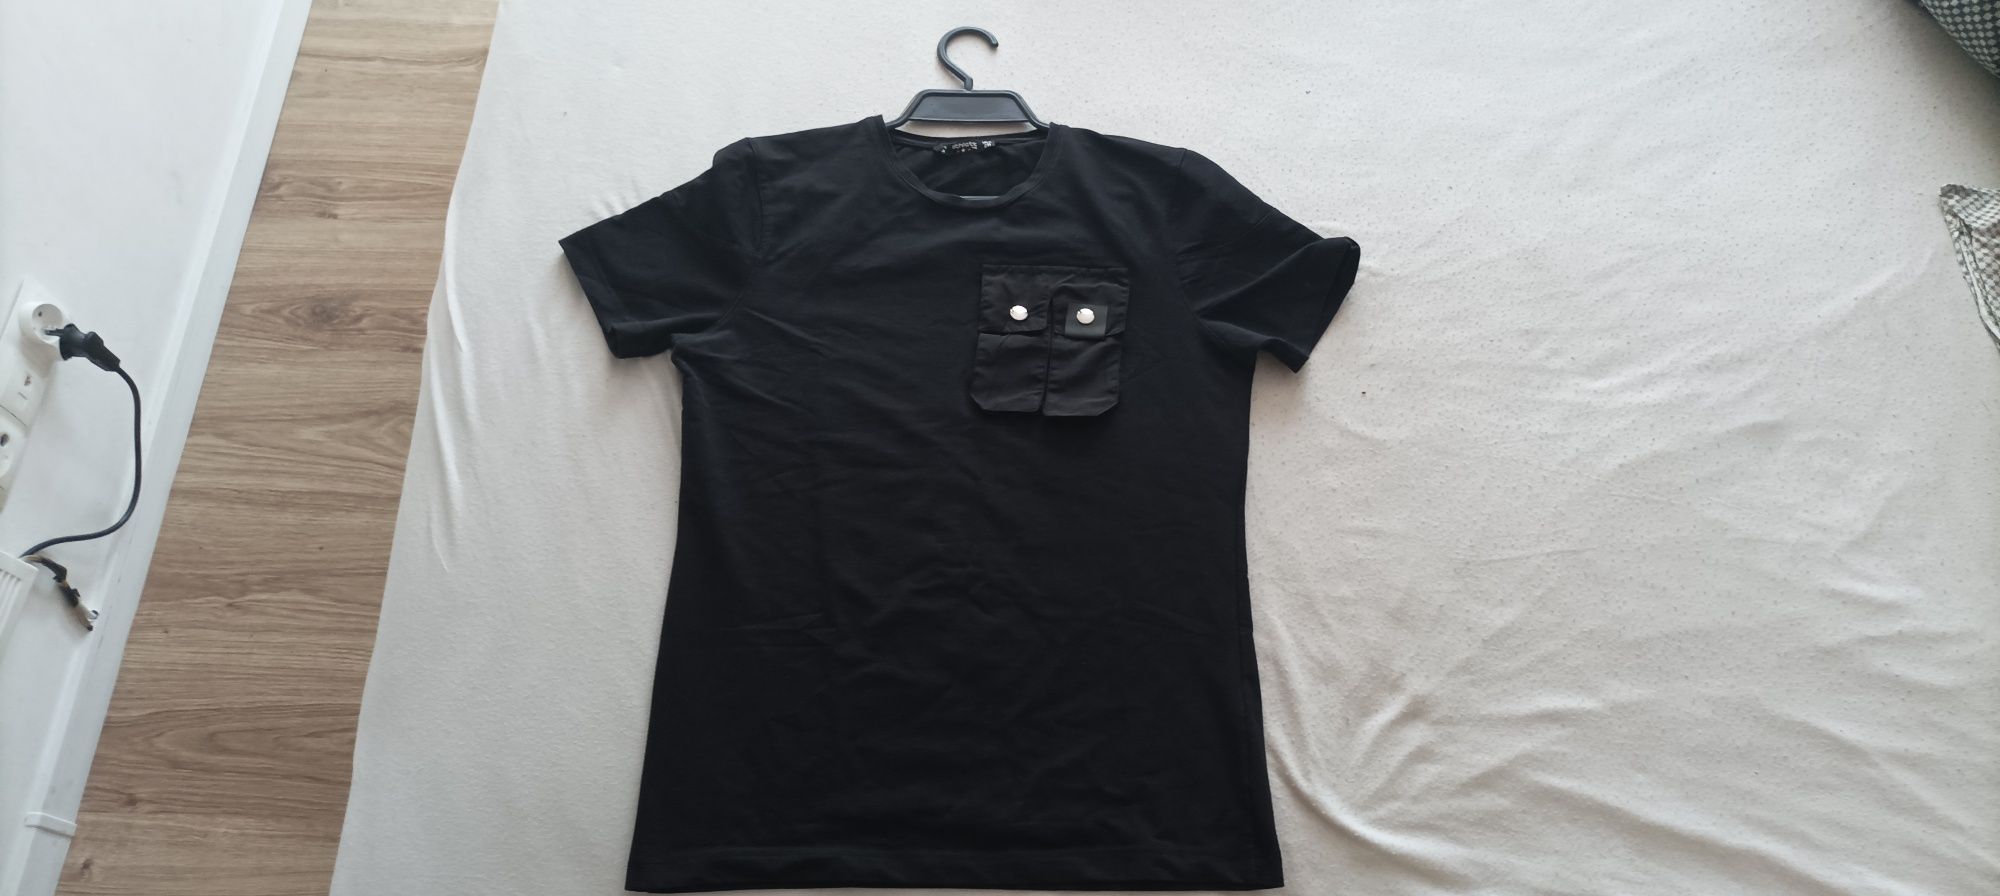 Koszulka M młodzieżowa Czarna t-shirt